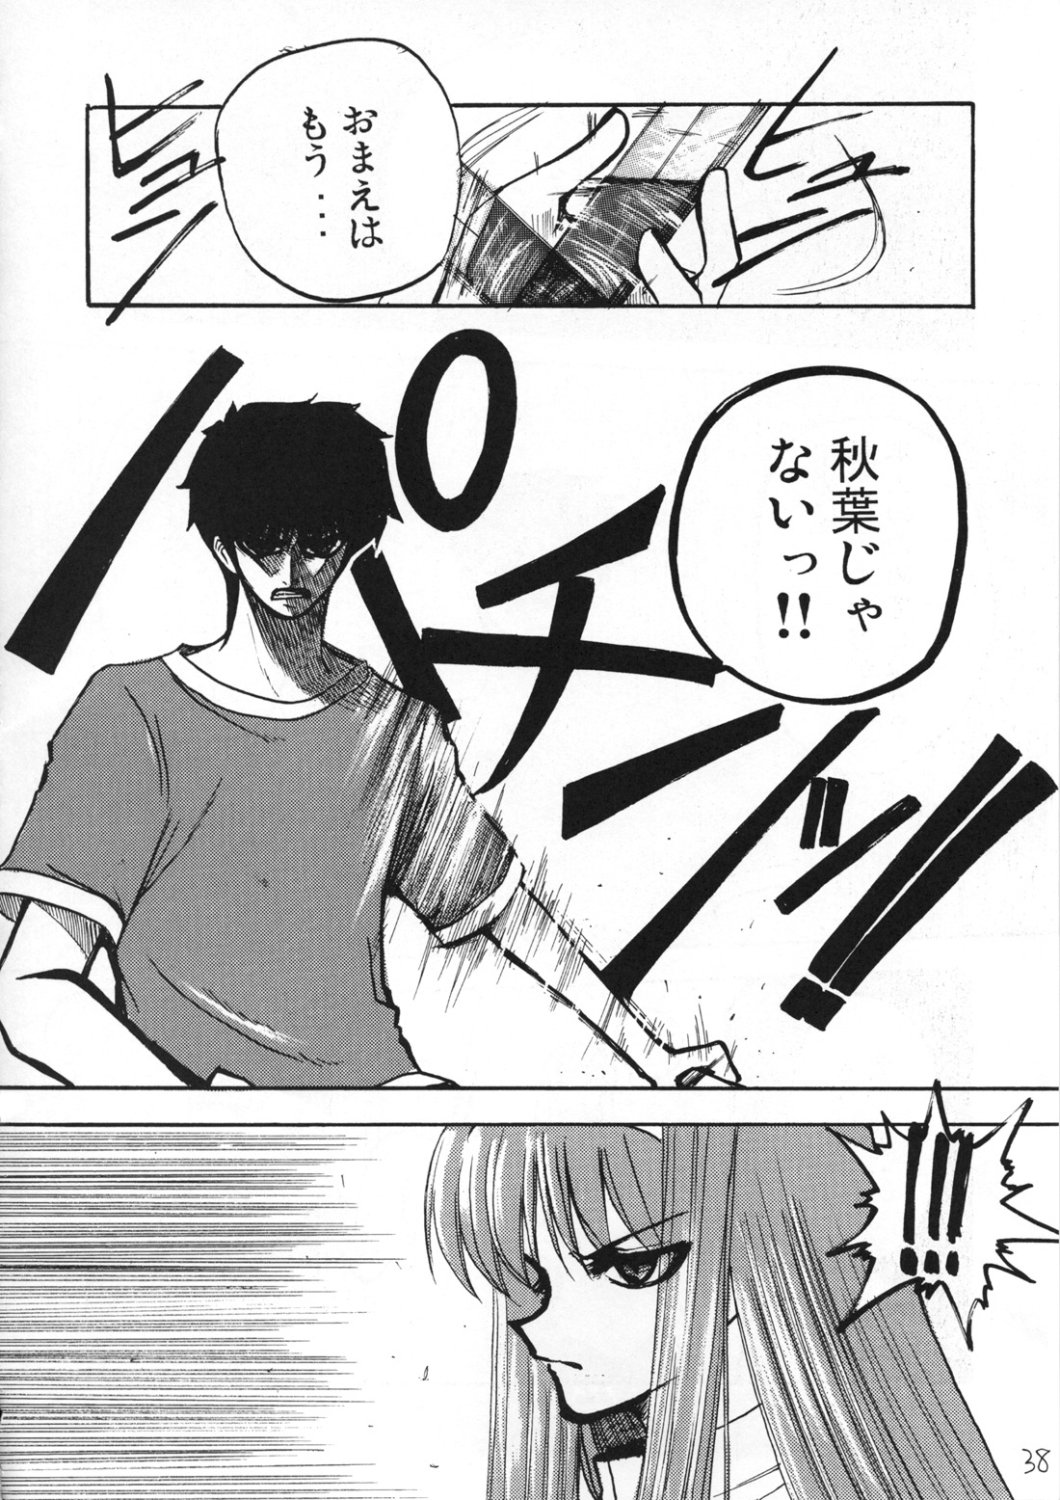 [Inochi no Furusato, Neko-bus Tei, Zangyaku Koui Teate] Akihamania [AKIHA MANIACS] (Tsukihime) page 37 full